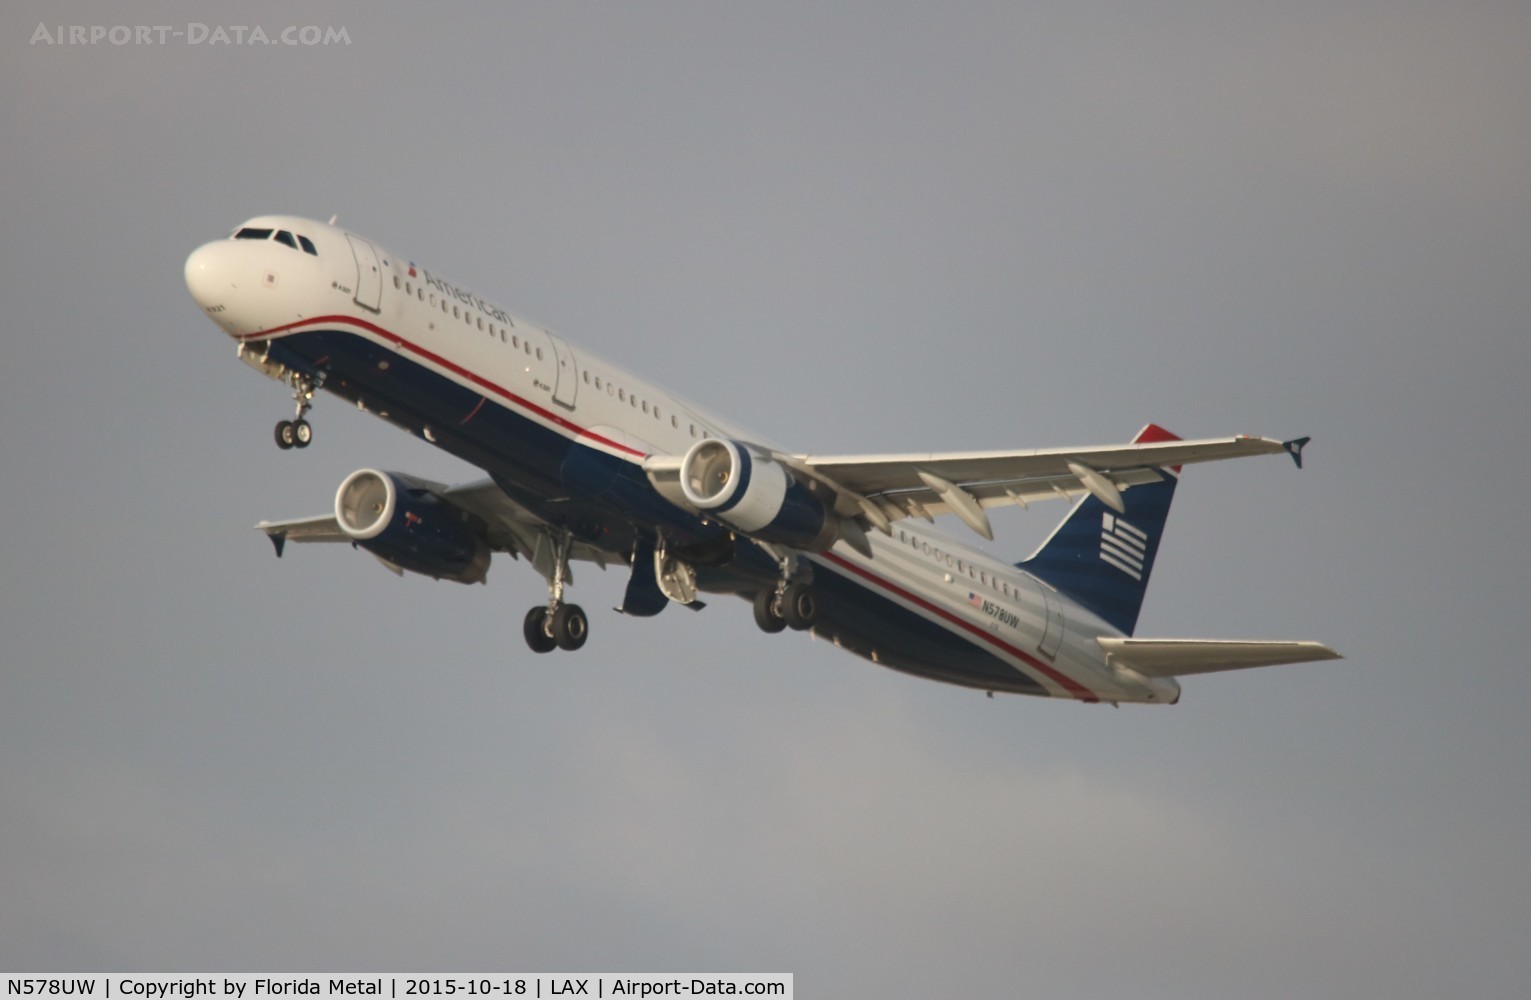 N578UW, 2014 Airbus A321-231 C/N 6035, USAirways Heritage